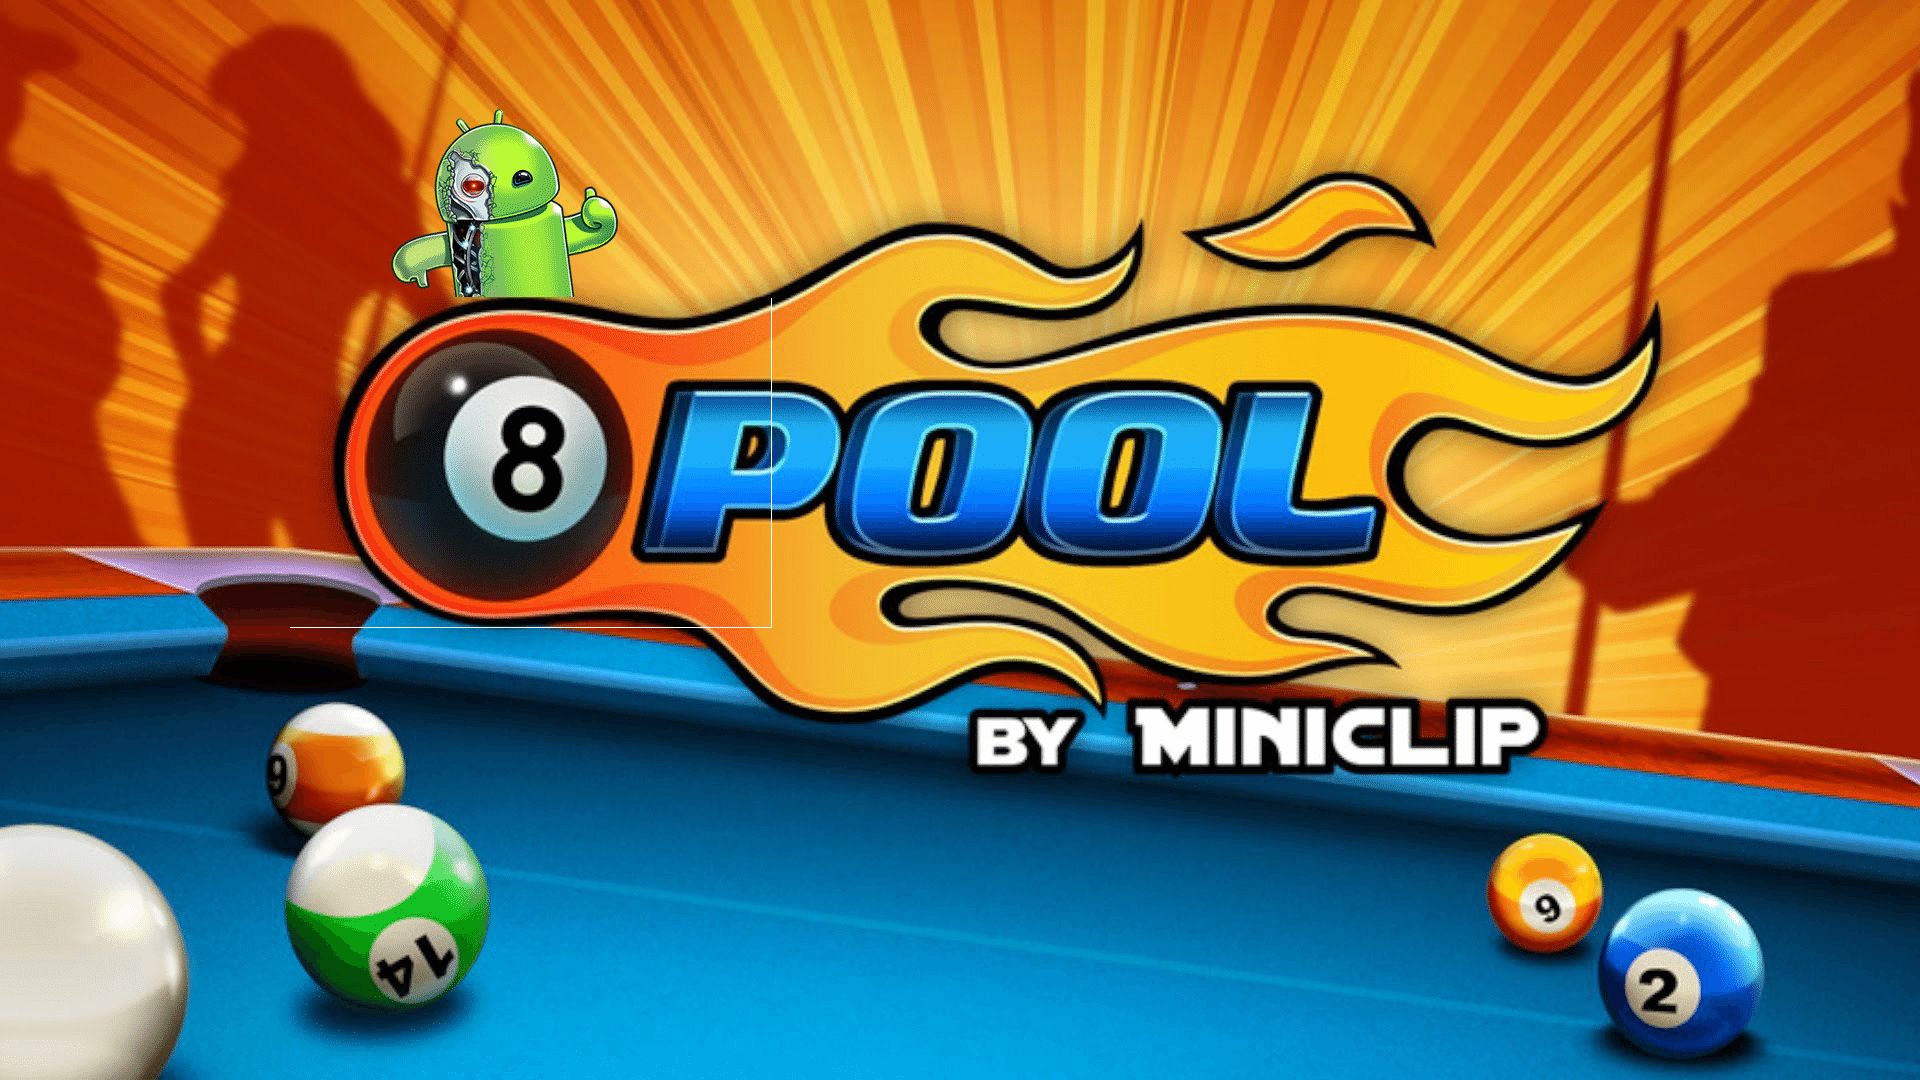 8ballpool. Бильярд "8 Ball Pool". Игры от Miniclip. Аватар 8 Ball Pool. Аватар для 8 Ball Pool 4.